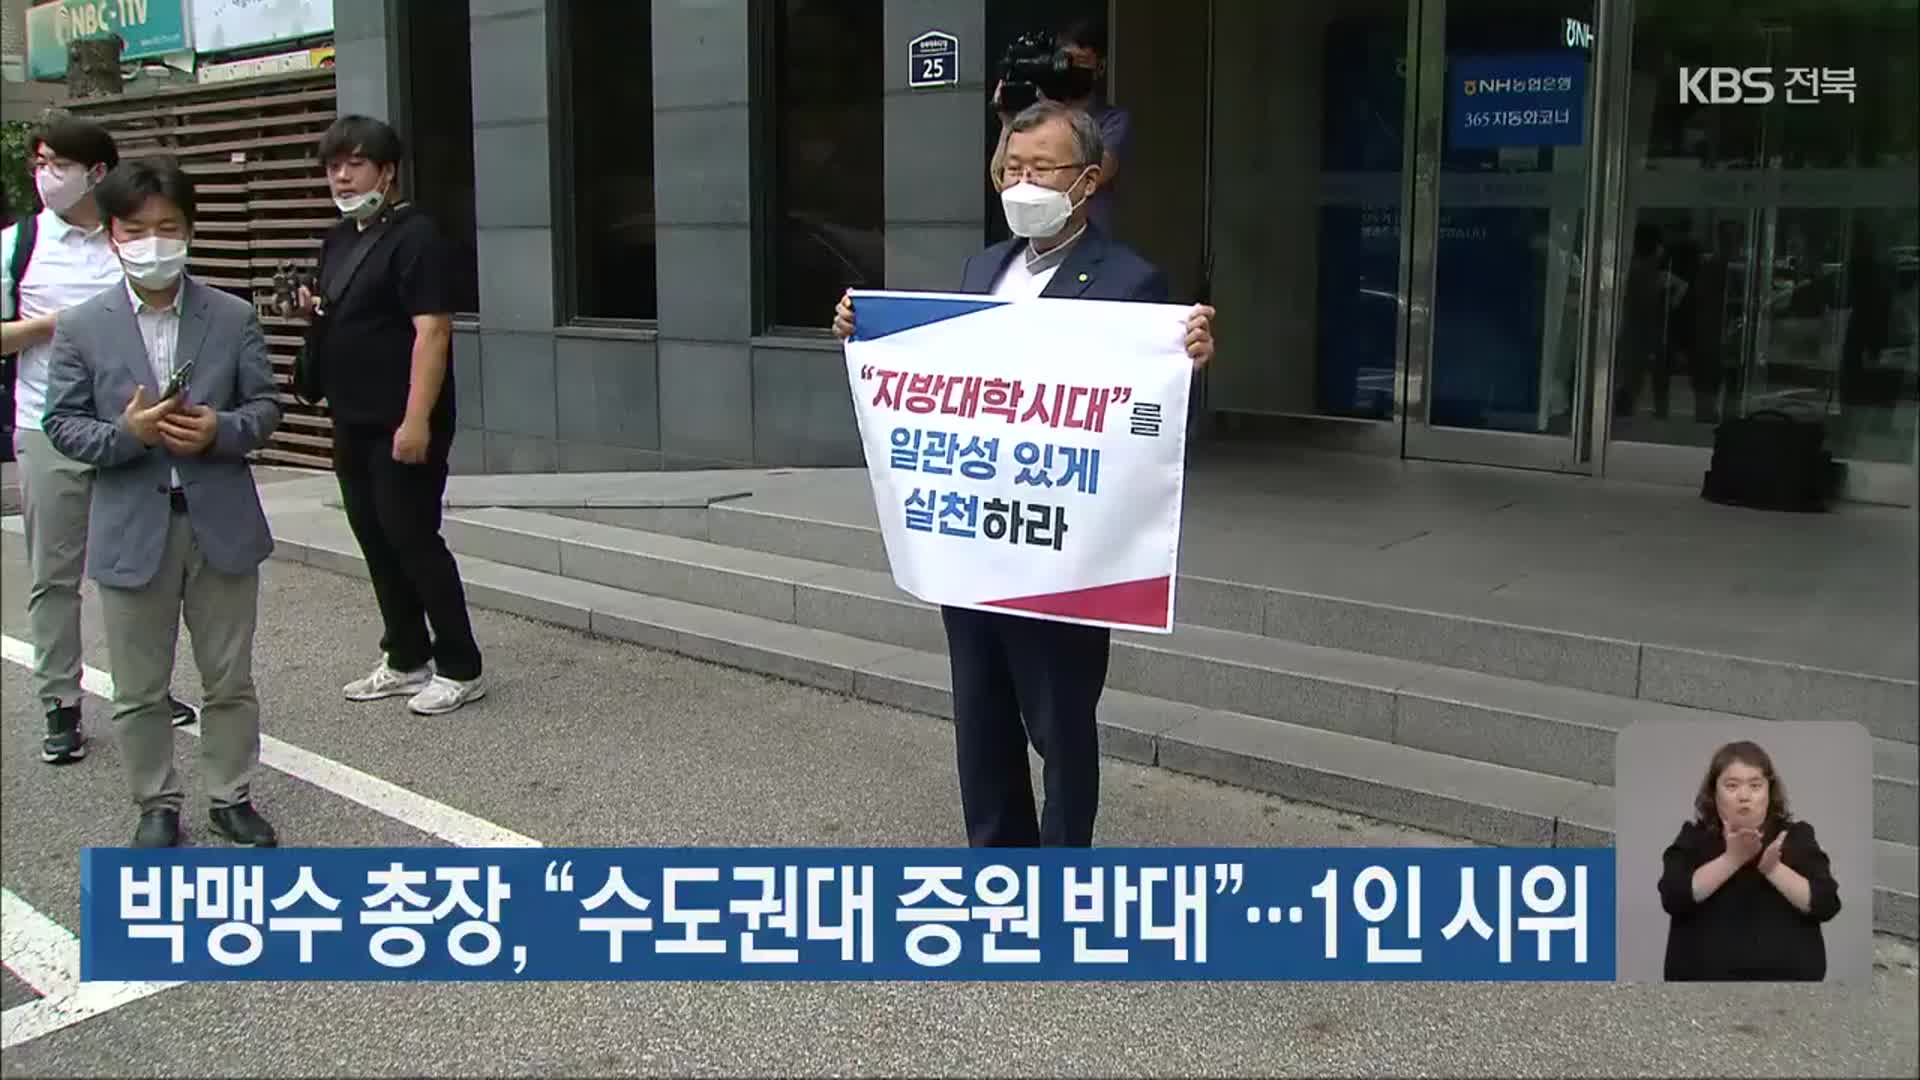 박맹수 총장, “수도권대 증원 반대”…1인 시위